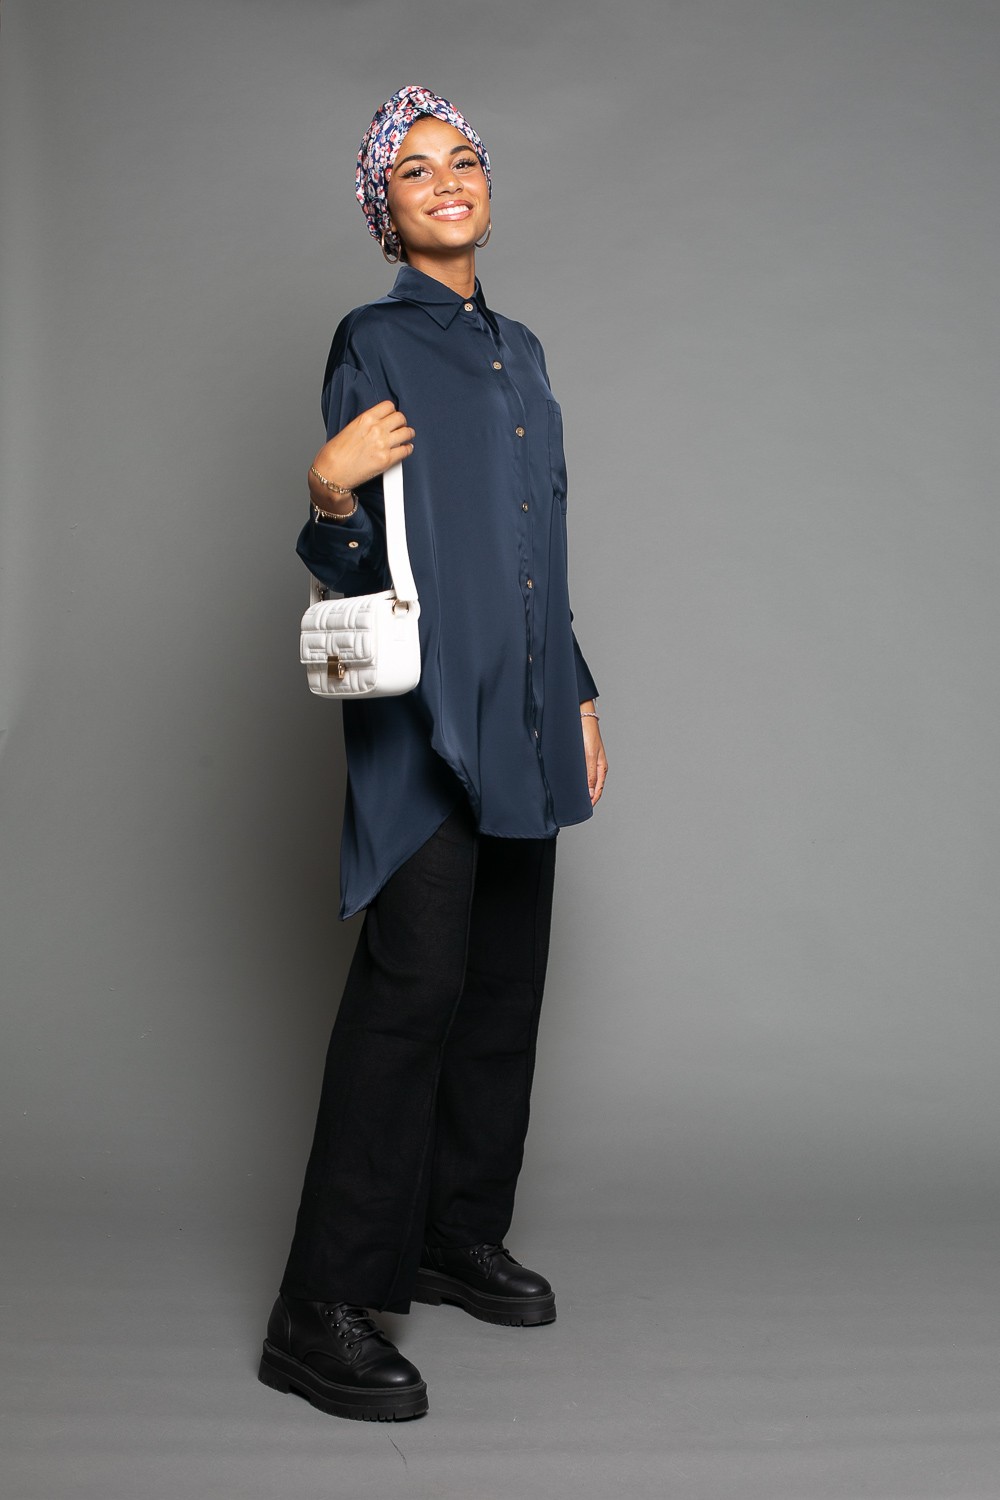 chemise satiné bleu foncé pour femme moderne boutique hijab musulmane